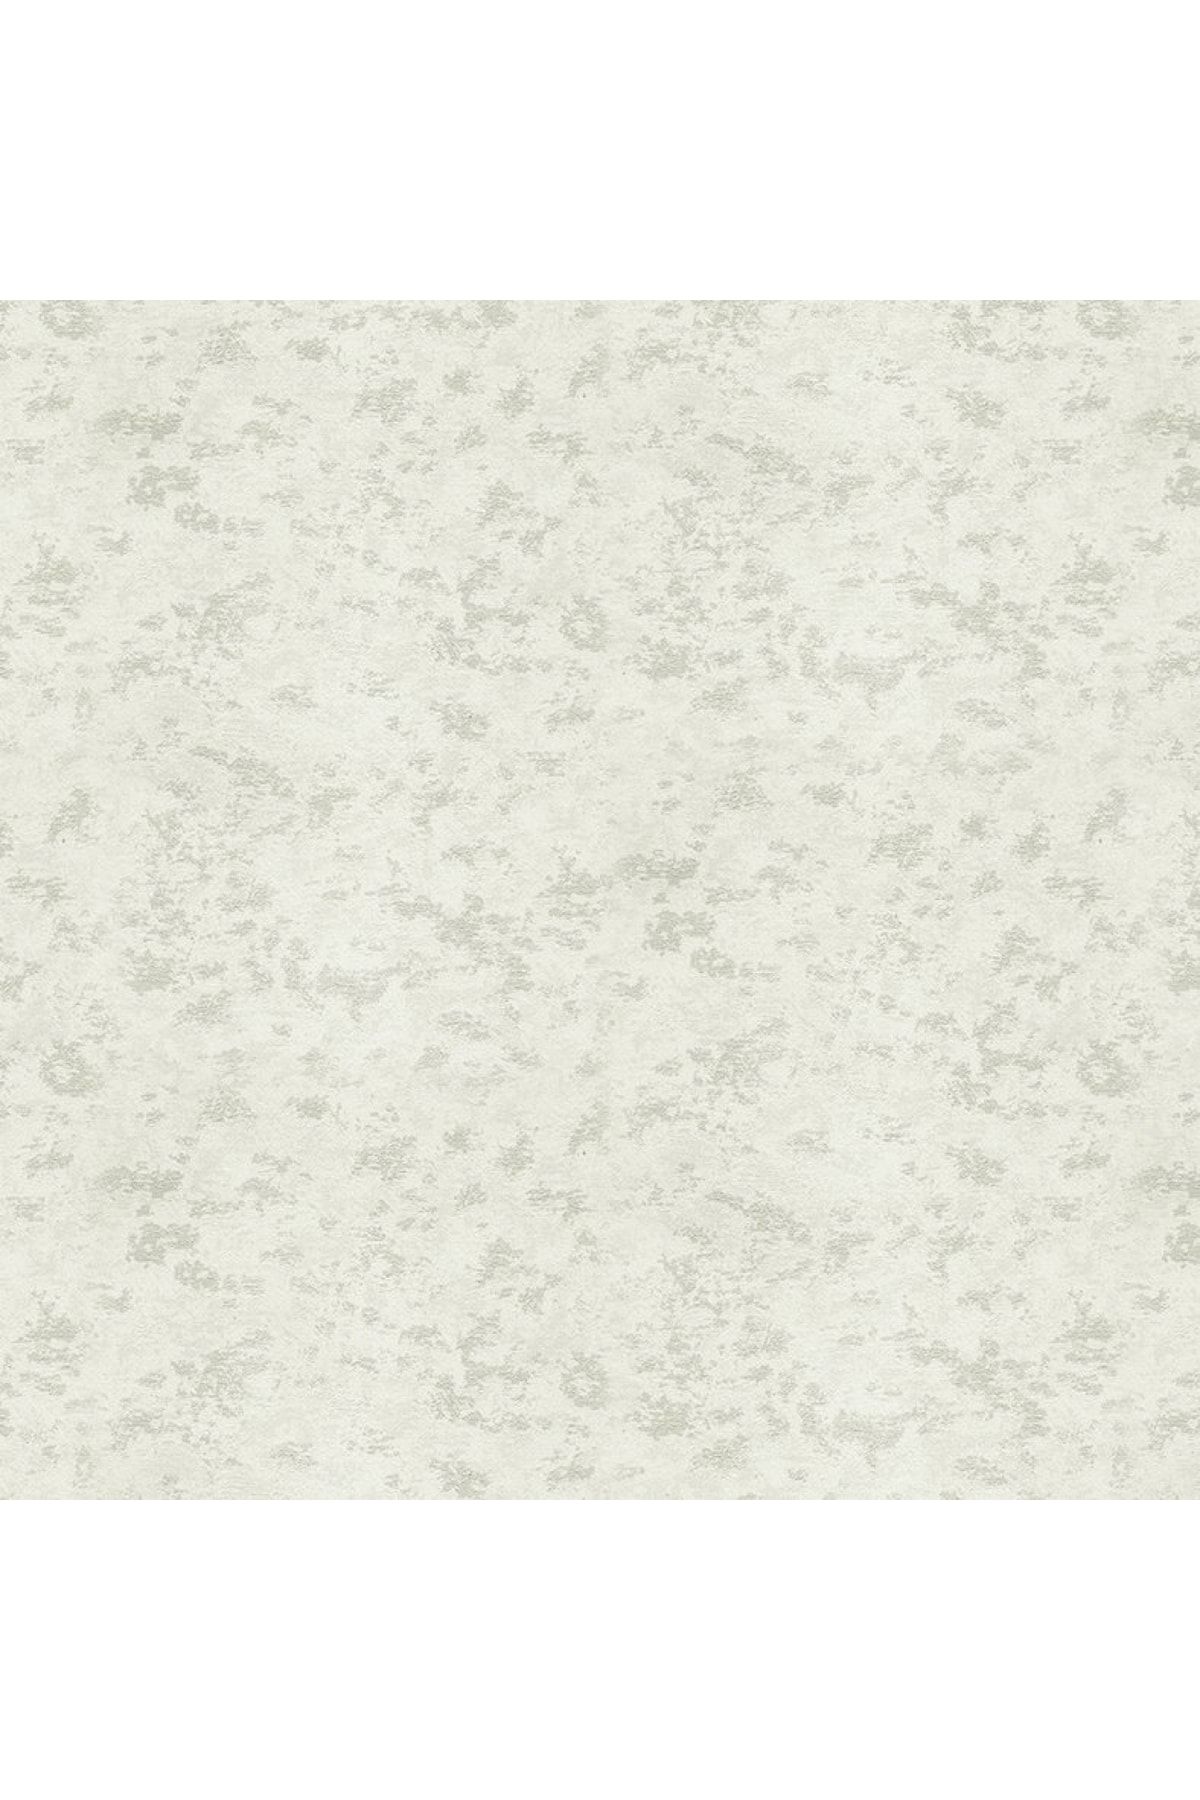 Decowall Decoparati Kendinden Desenli Beyaz Royal Port Duvar Kağıdı 8805-01